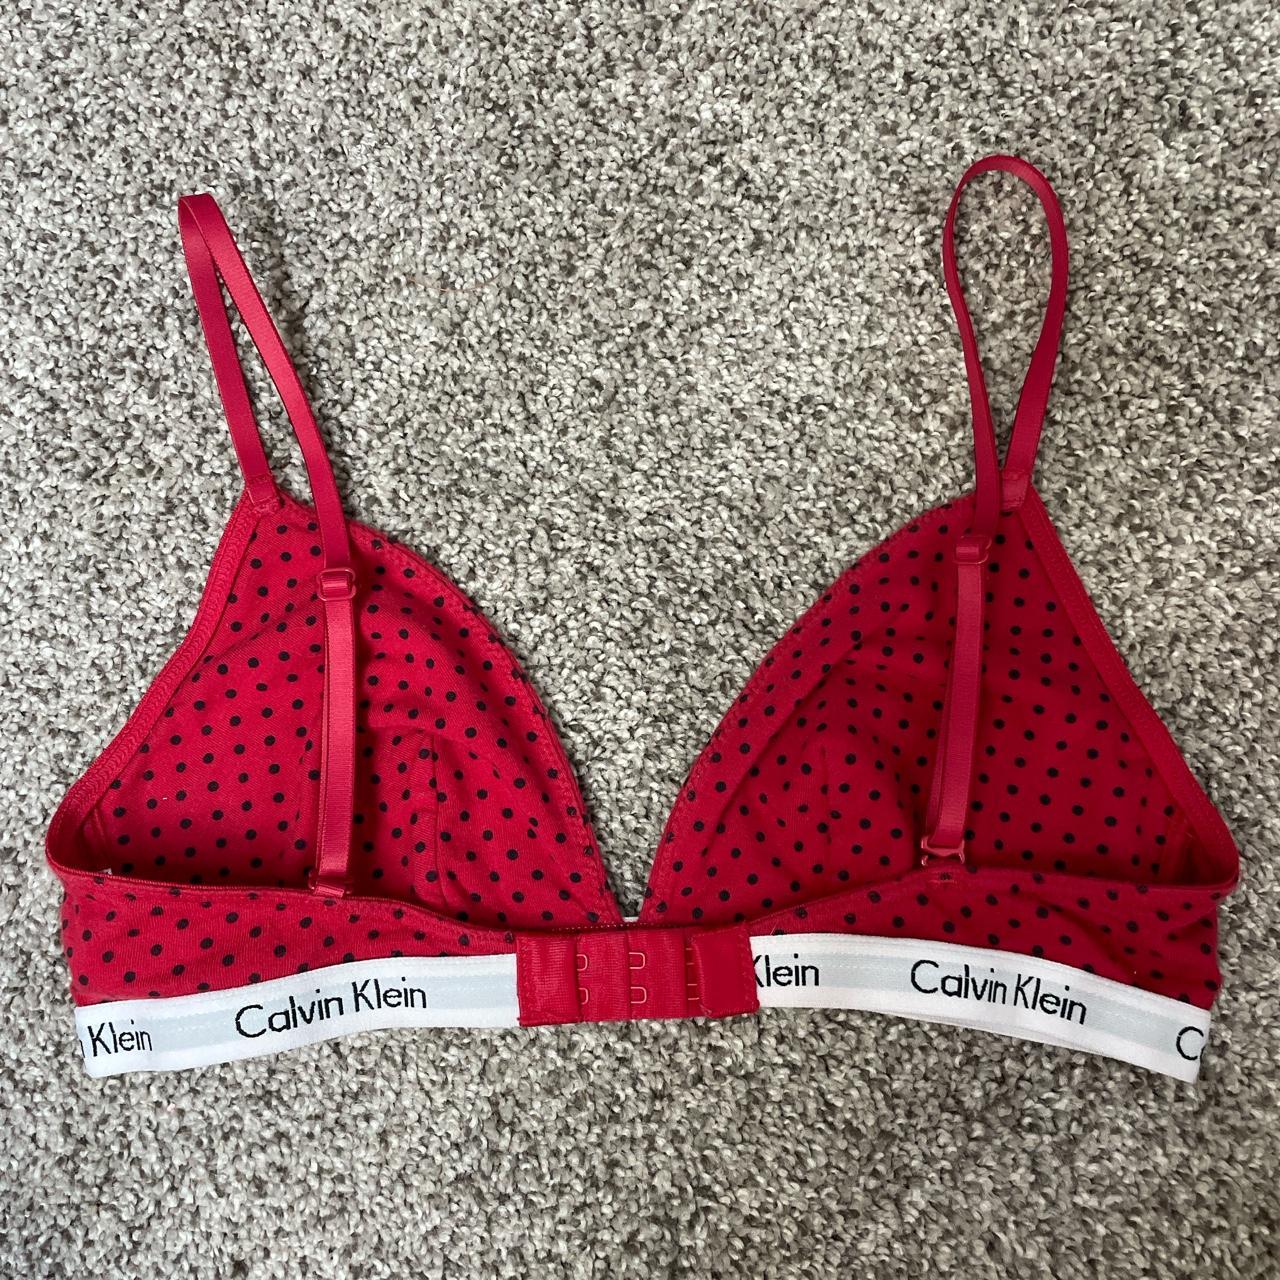 Calvin Klein Women's Red and Black Bra | Depop